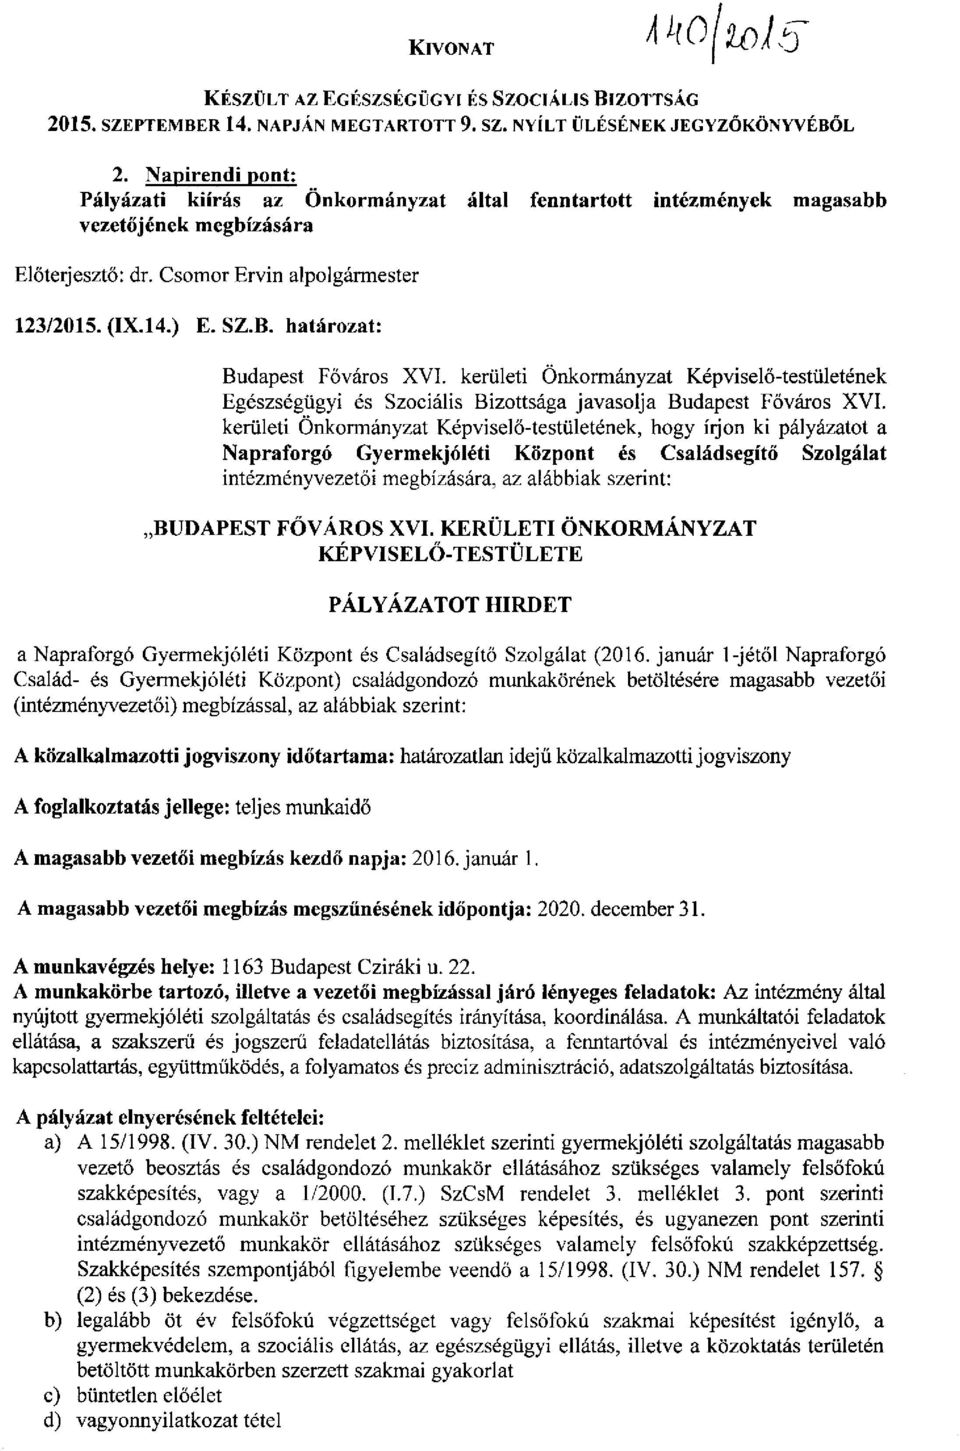 határozat: Budapest Főváros XVI. kerületi Önkormányzat Képviselő-testületének Egészségügyi és Szociális Bizottsága javasolja Budapest Főváros XVI.